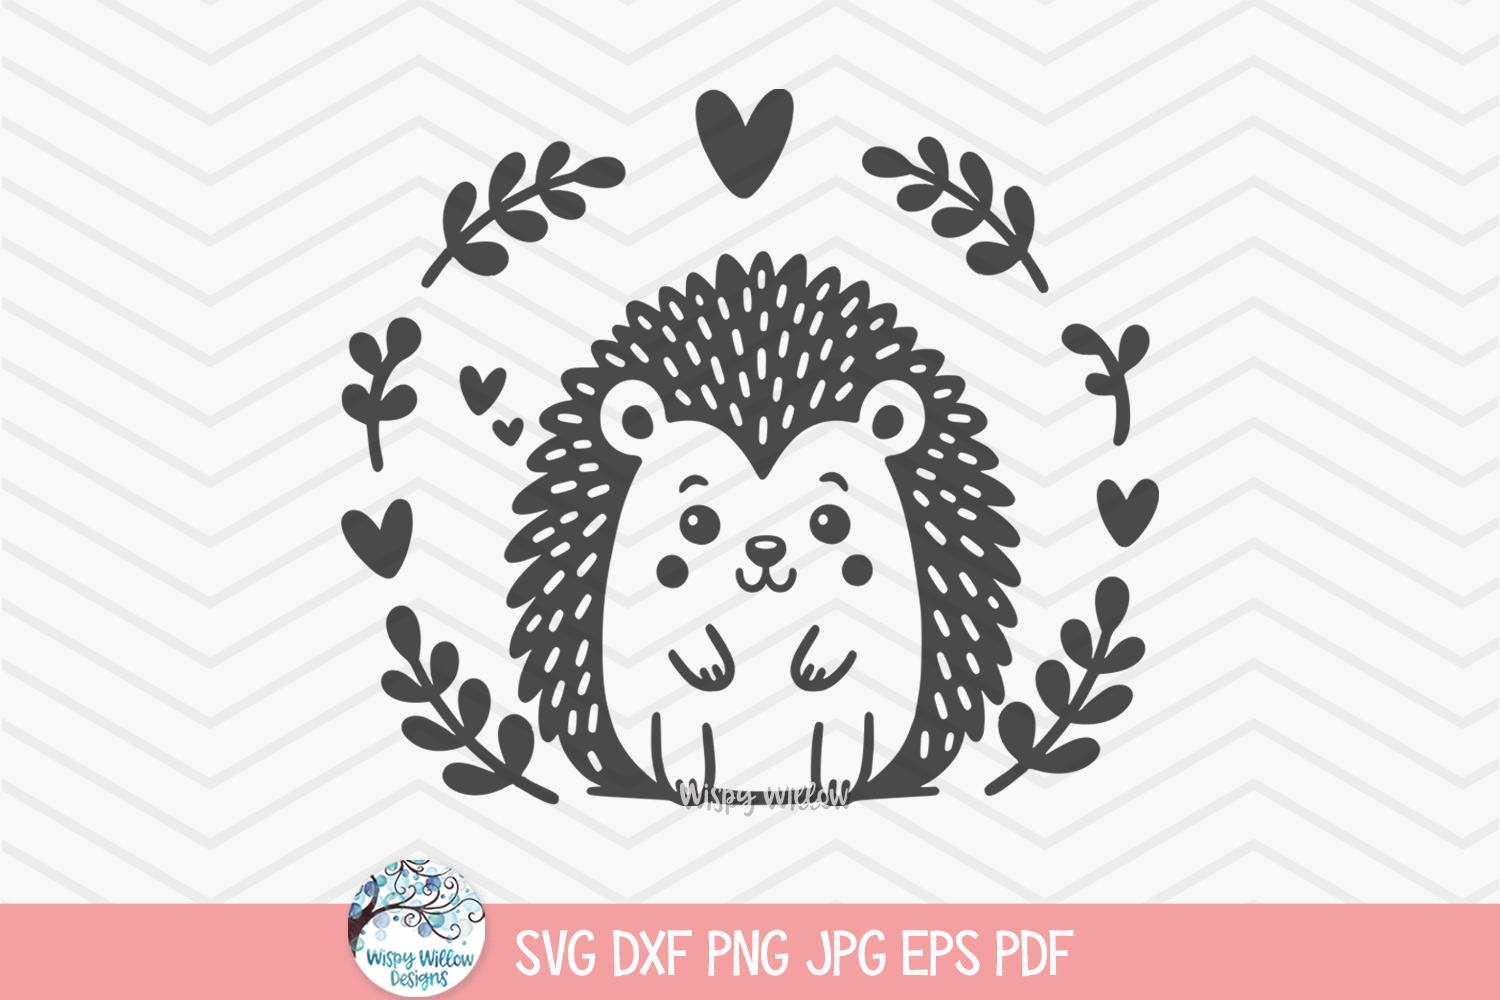 Hedgehog SVG | Cute Animal Illustration PNG